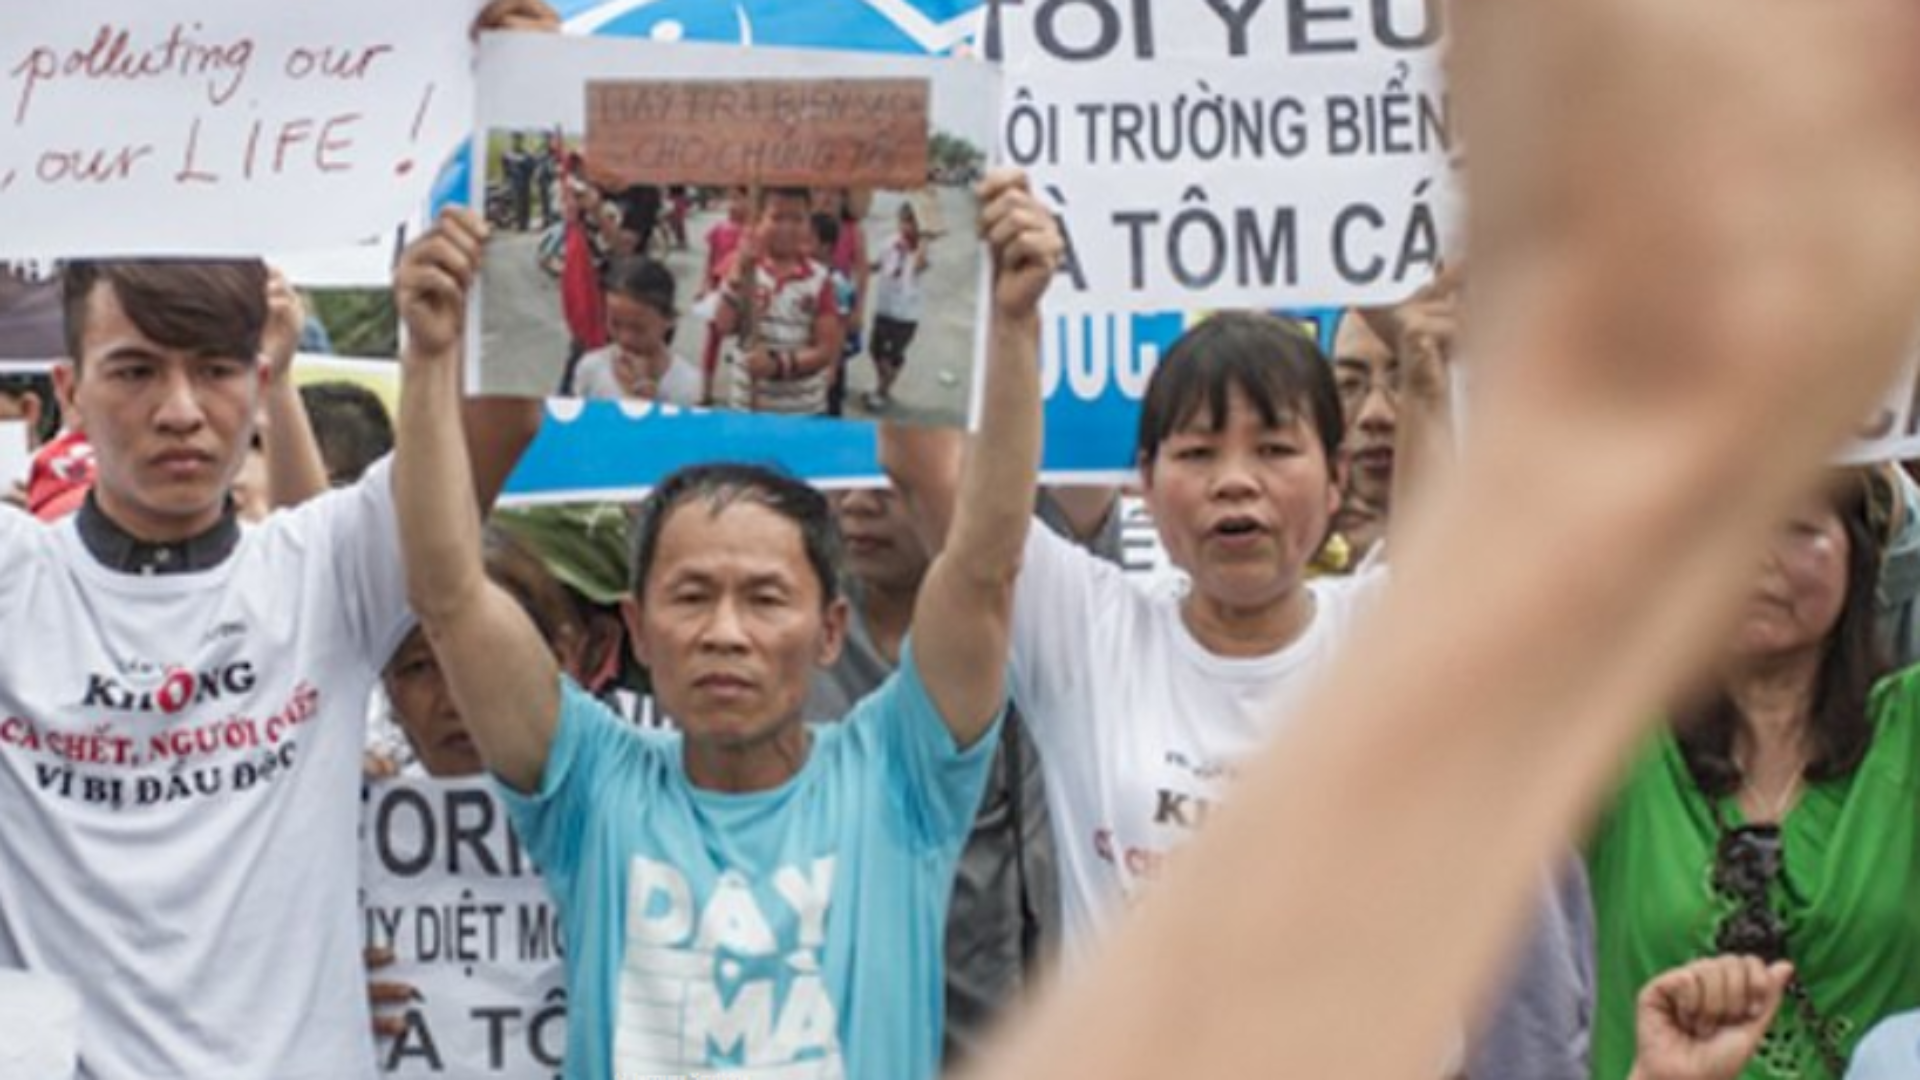 Chính quyền Việt Nam mạnh tay đàn áp nhân quyền trước thềm APEC – dpa International